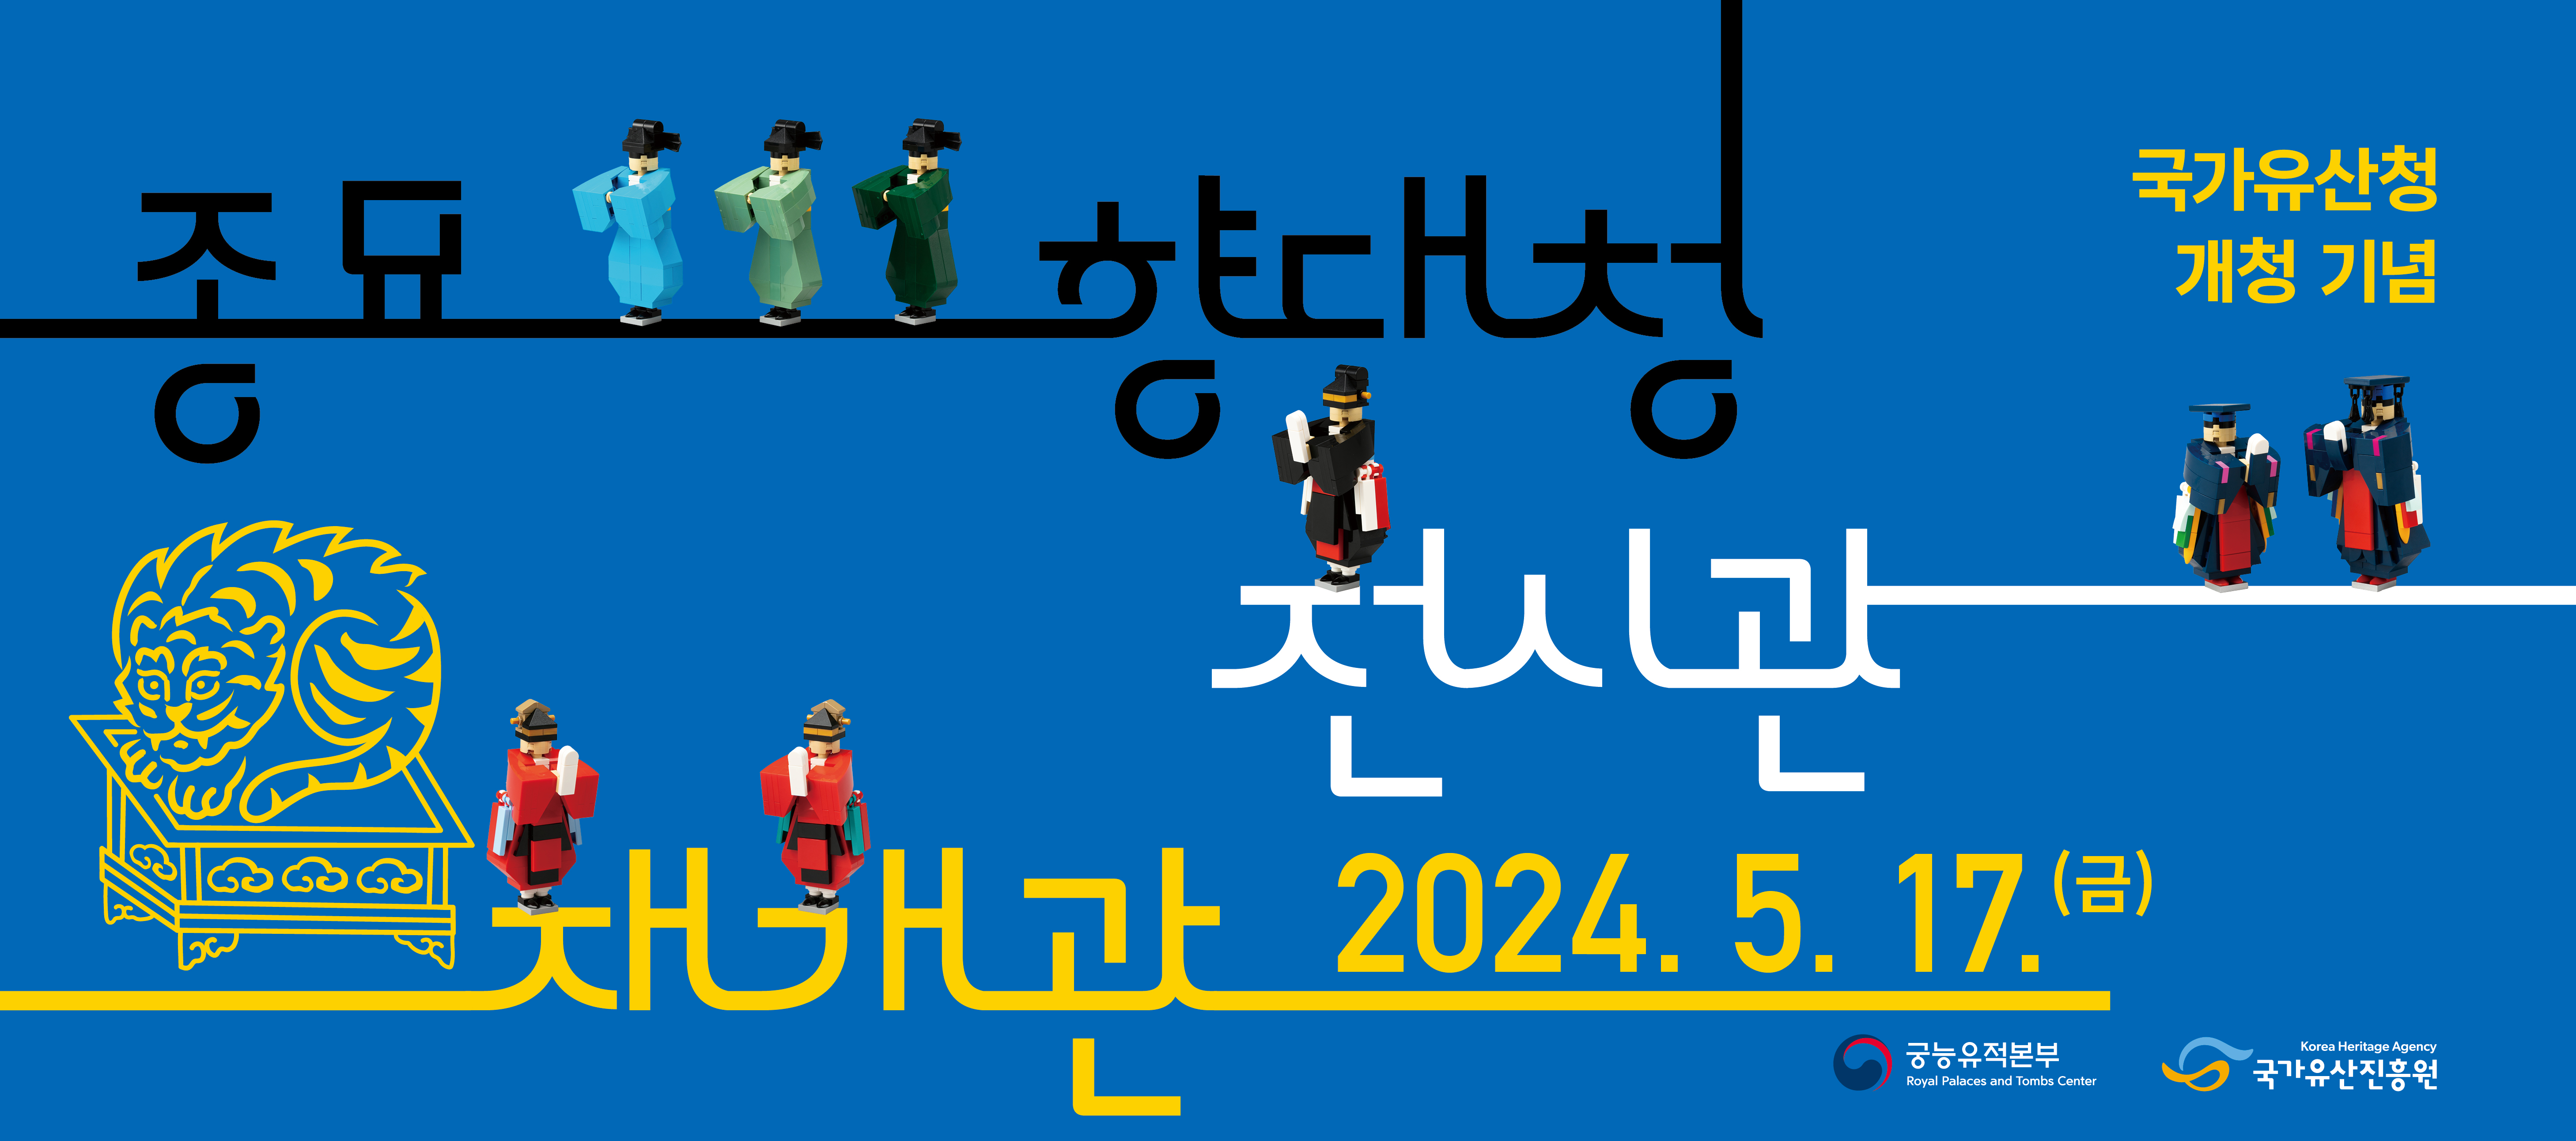 국가유산청 개청 기념 종묘향대청 전시관 재개관 2024.5.17.(금)